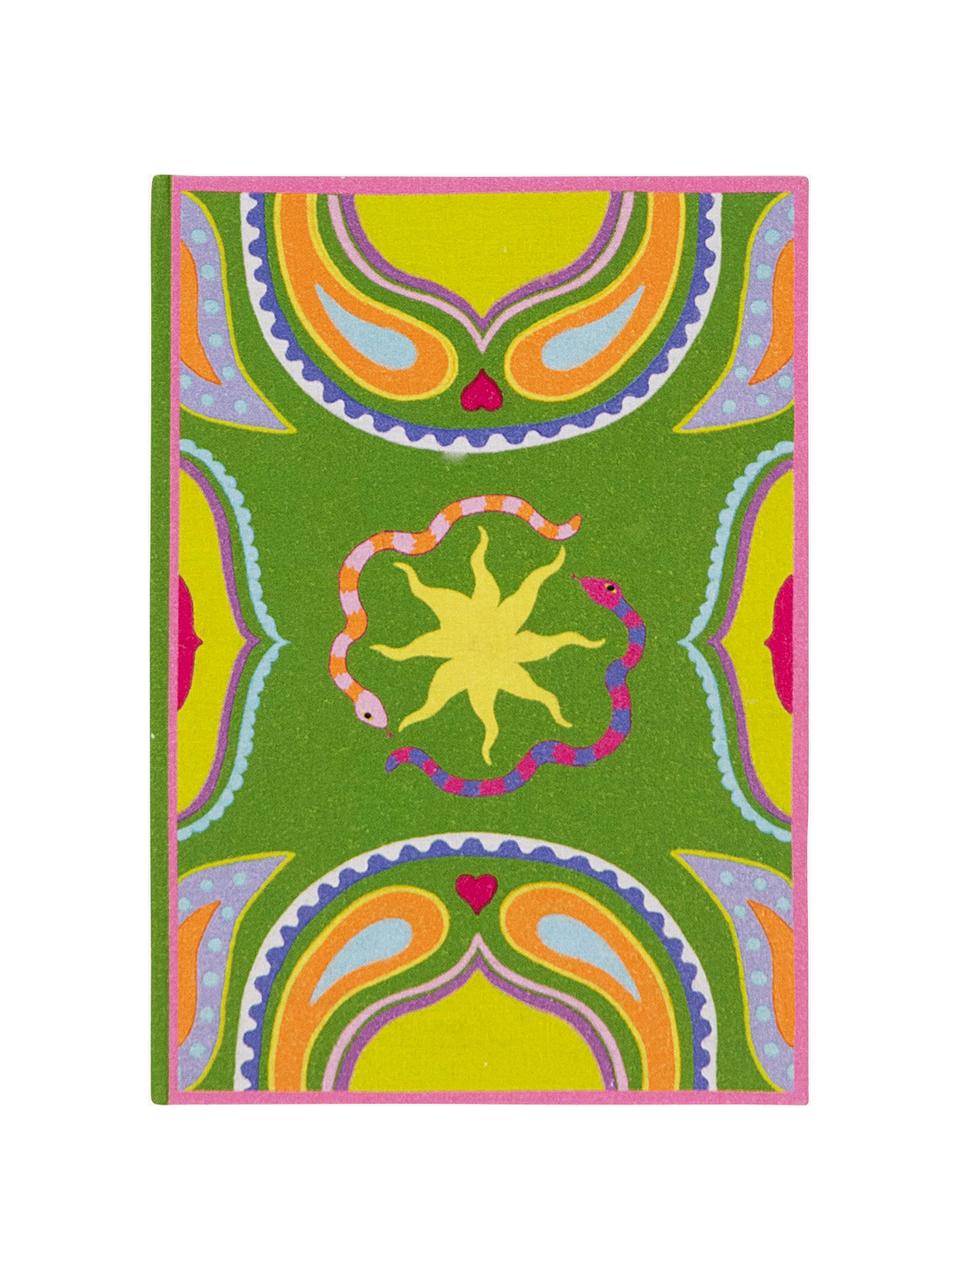 Zápisník Lucid Dreams, Bavlna, papír 80 g/m², barevný papír, karton, Zelená, více barev, Š 16 cm, V 23 cm